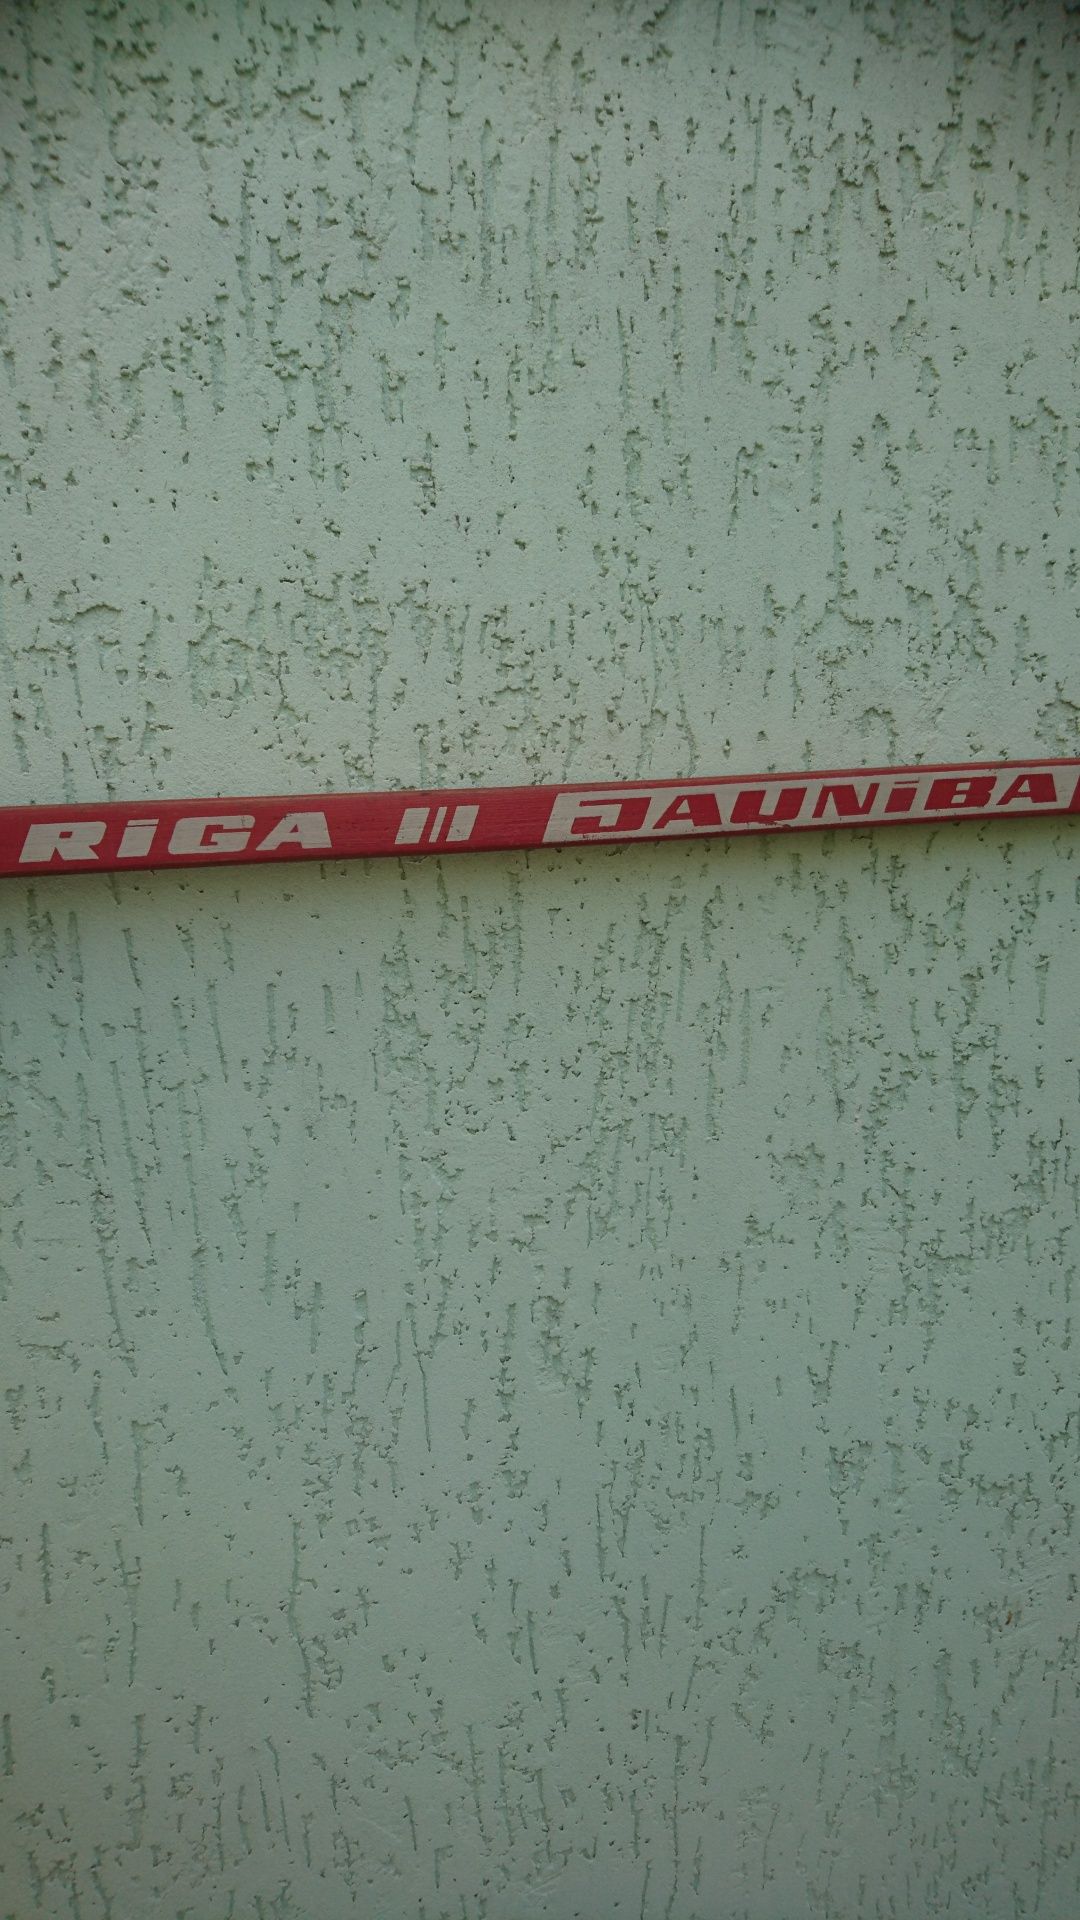 Продам клюшку для хокея RIGA 1984 г.